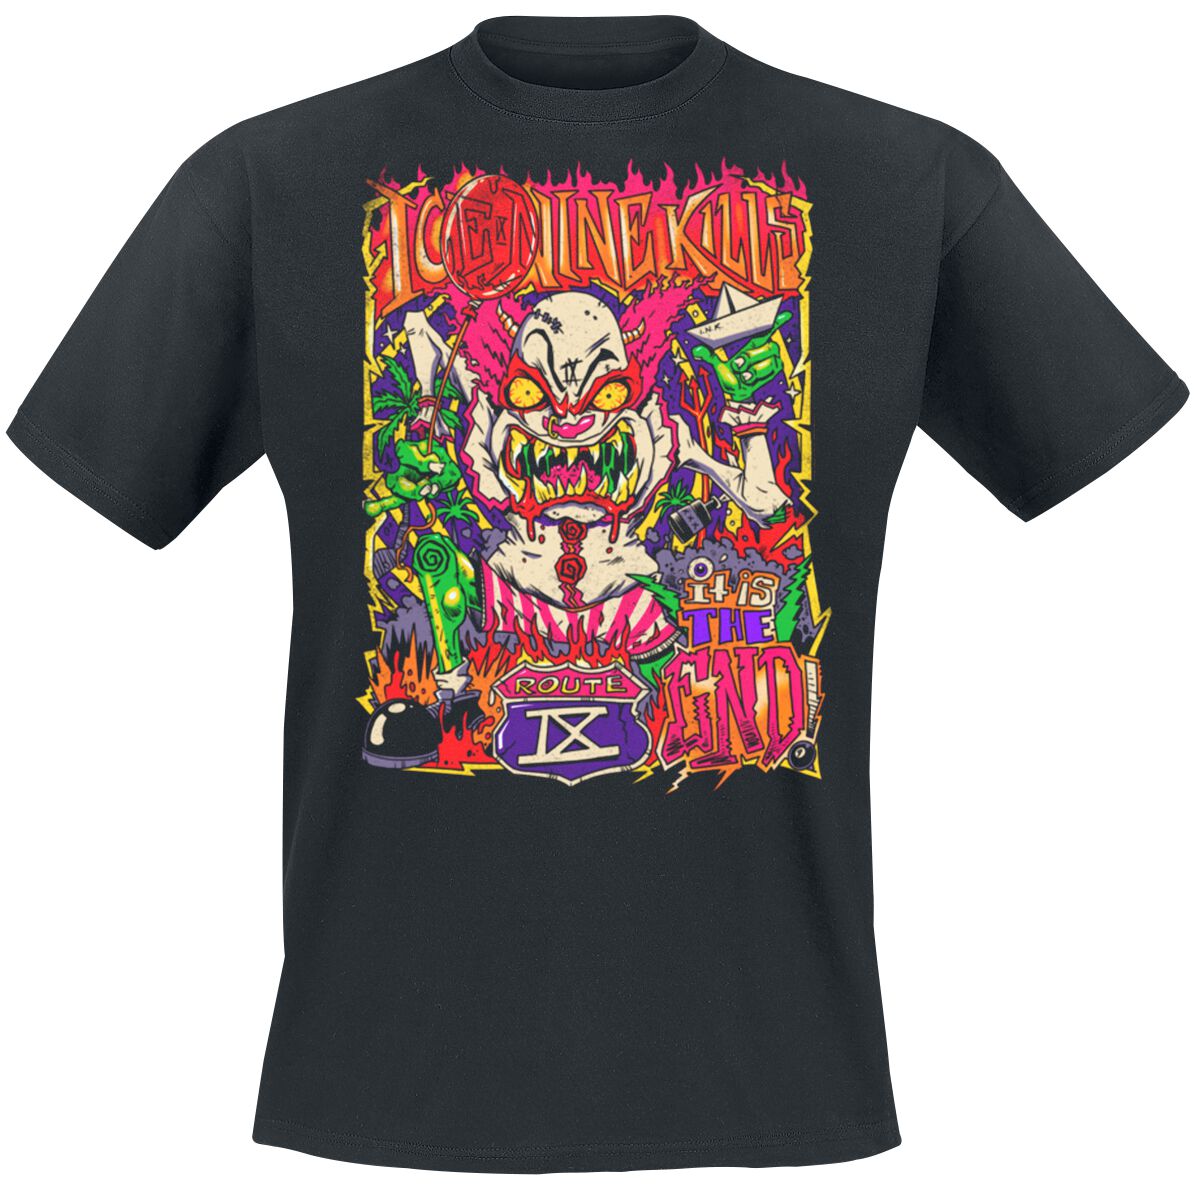 Ice Nine Kills T-Shirt - Clown Zombie - S bis 4XL - für Männer - Größe XL - schwarz  - Lizenziertes Merchandise!